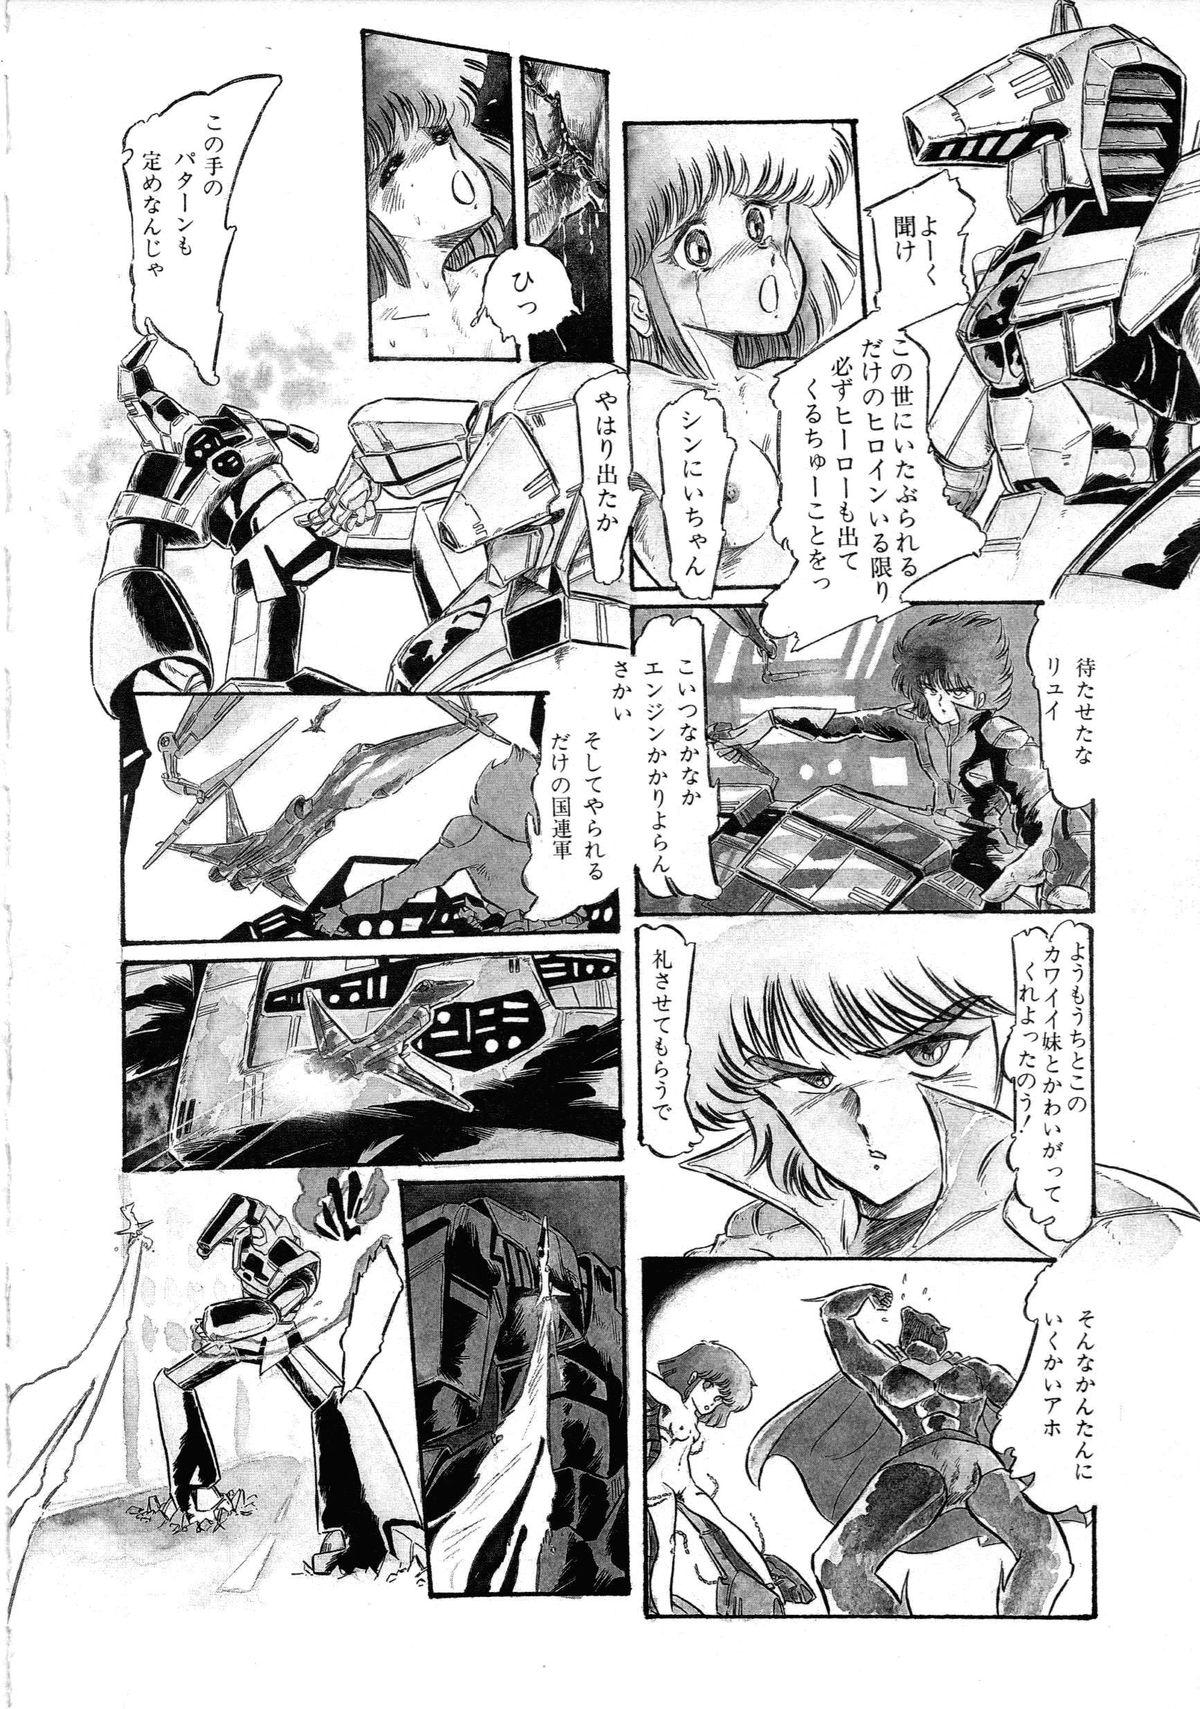 [Anthology] Robot & Bishoujo Kessakusen - Lemon People 1982-1986 43